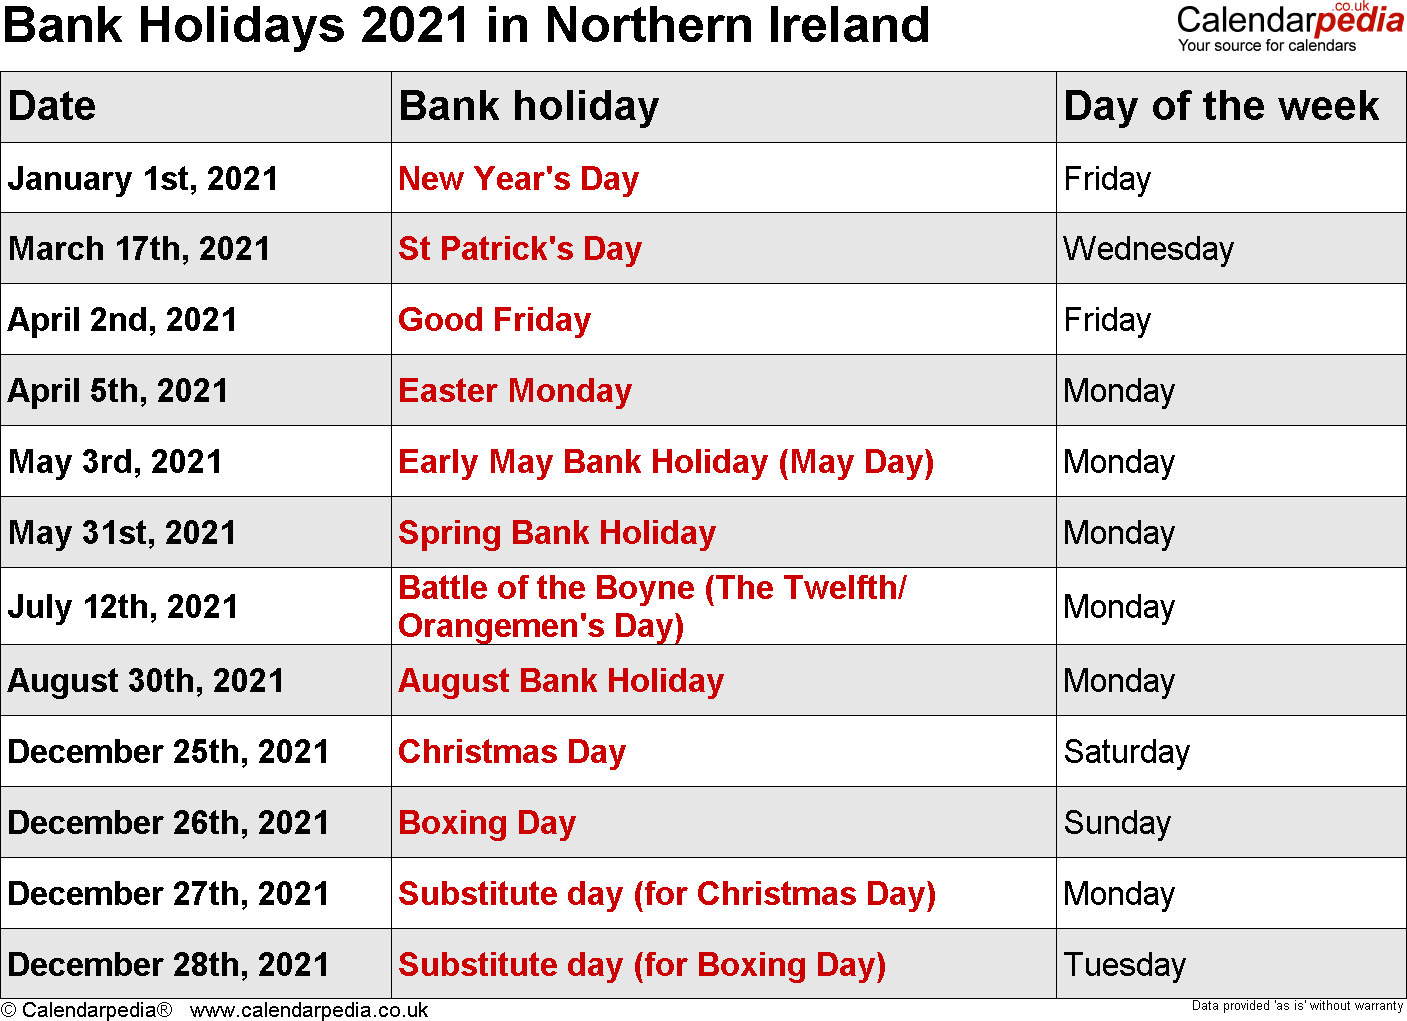 Northern Ireland Bank Holidays 2021 - Publicholidays.Co.Uk